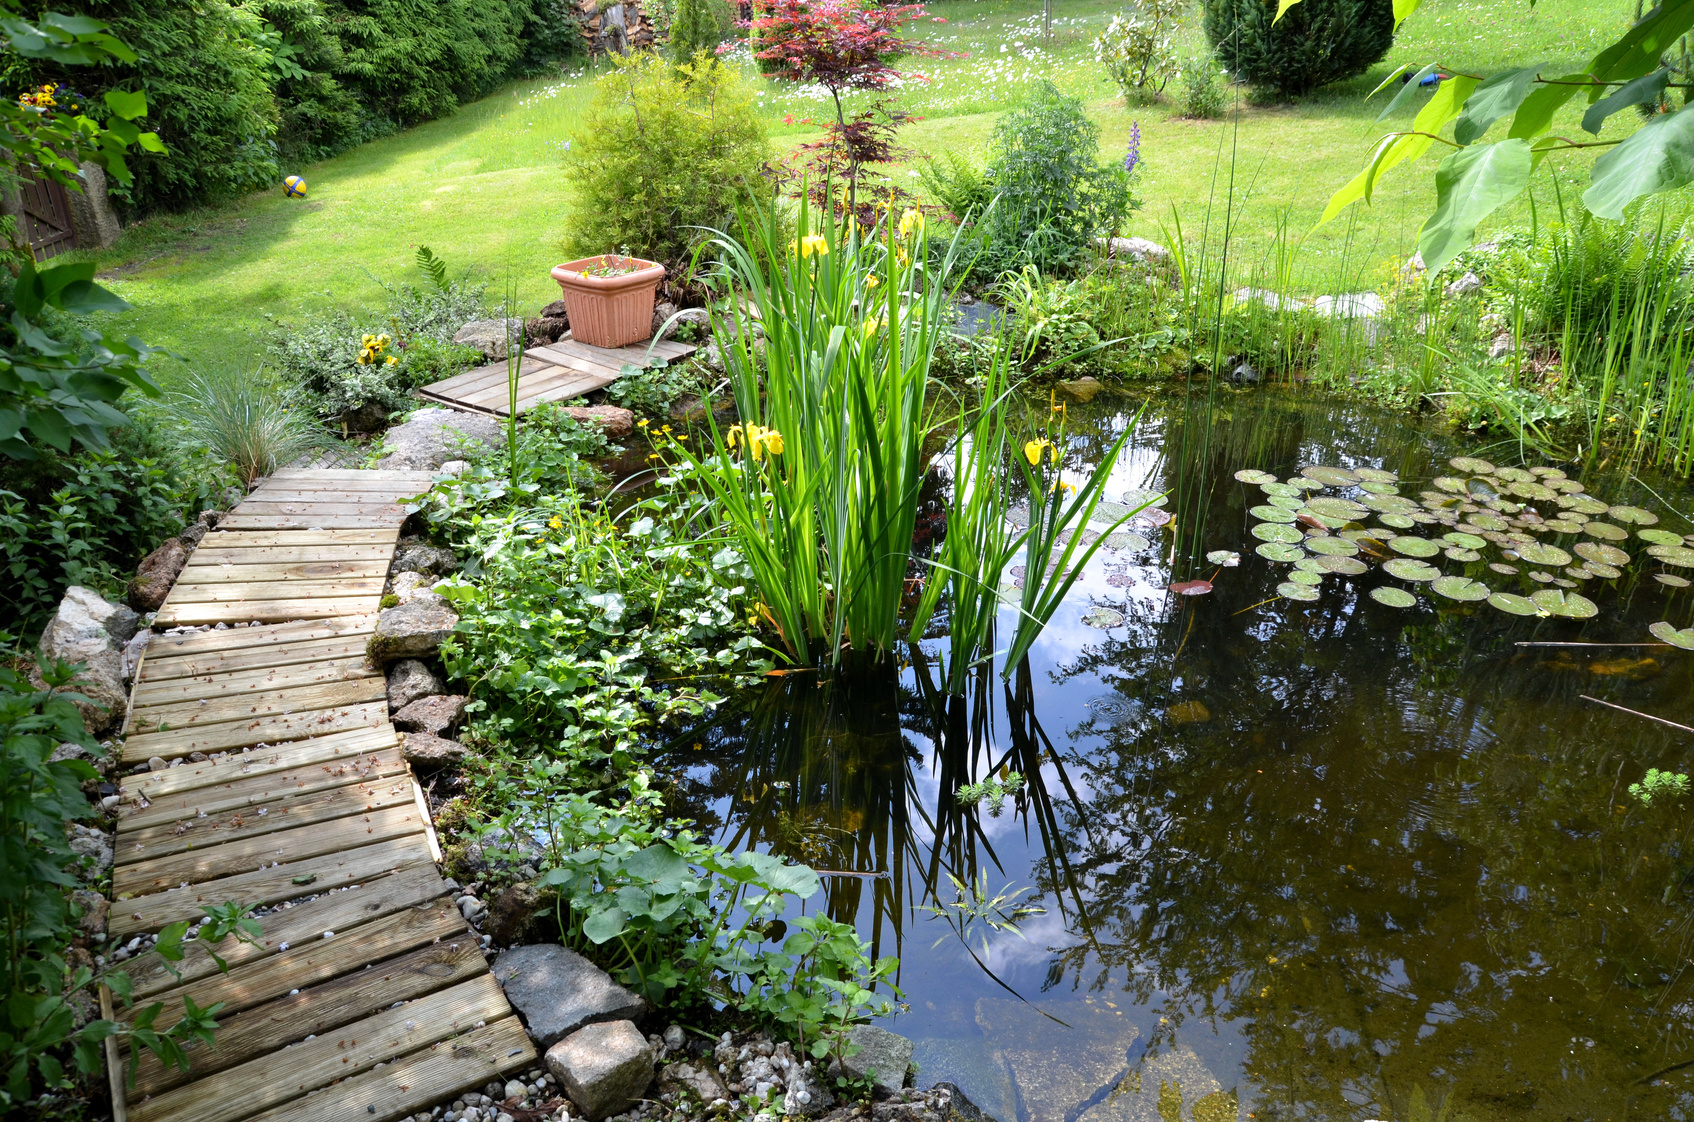 Pond in the Garden